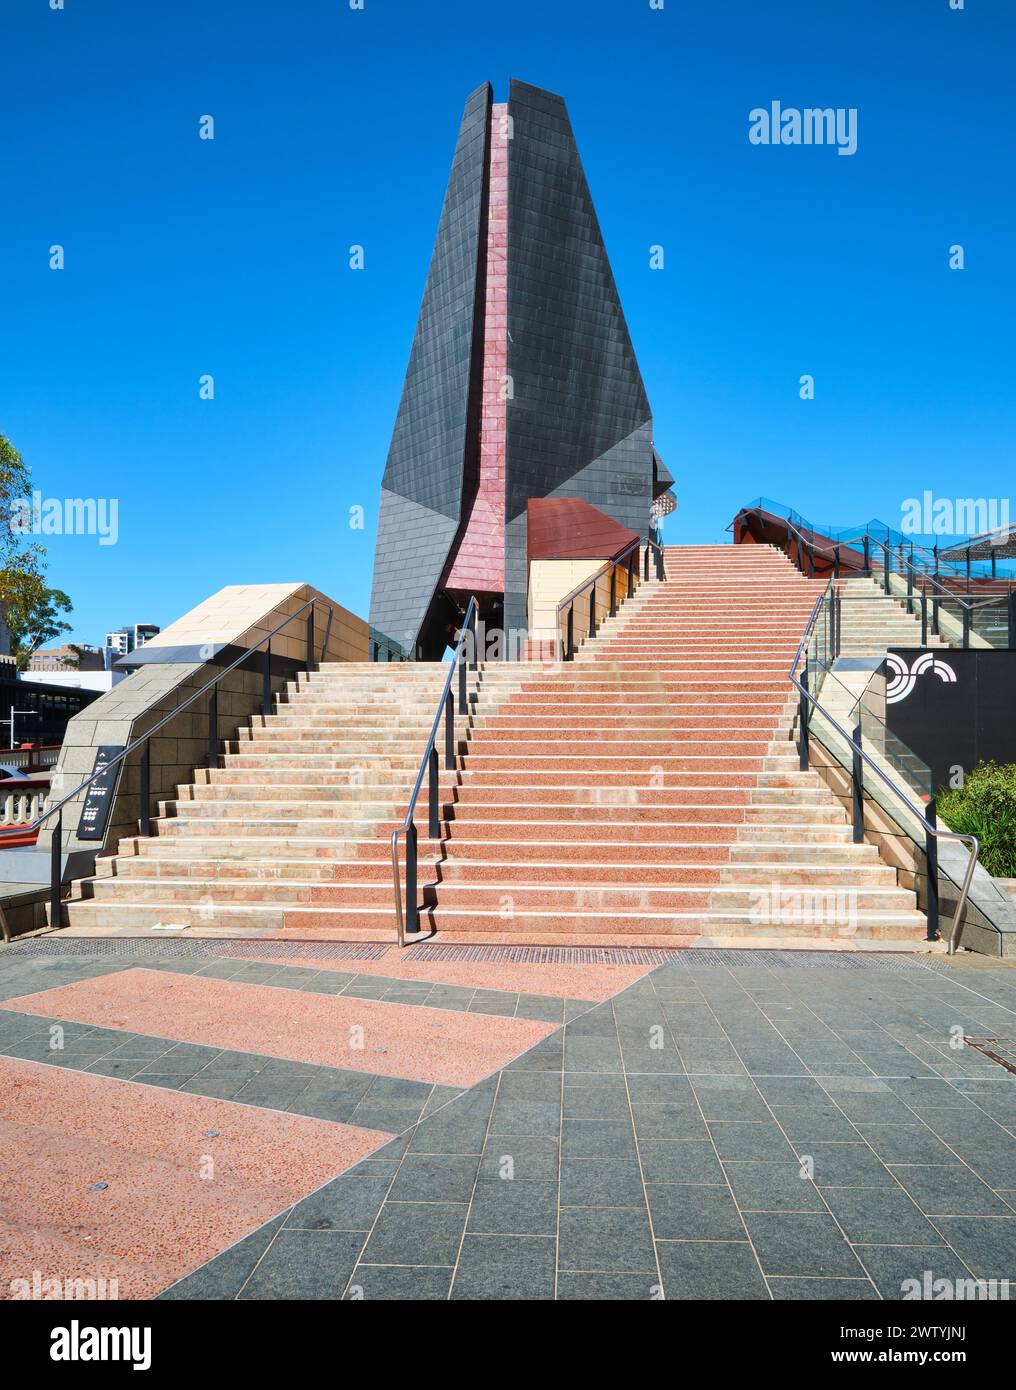 Escaliers menant à une passerelle à Yagan Square, un espace public reliant Northridge au quartier central des affaires de Perth, en Australie occidentale. Banque D'Images